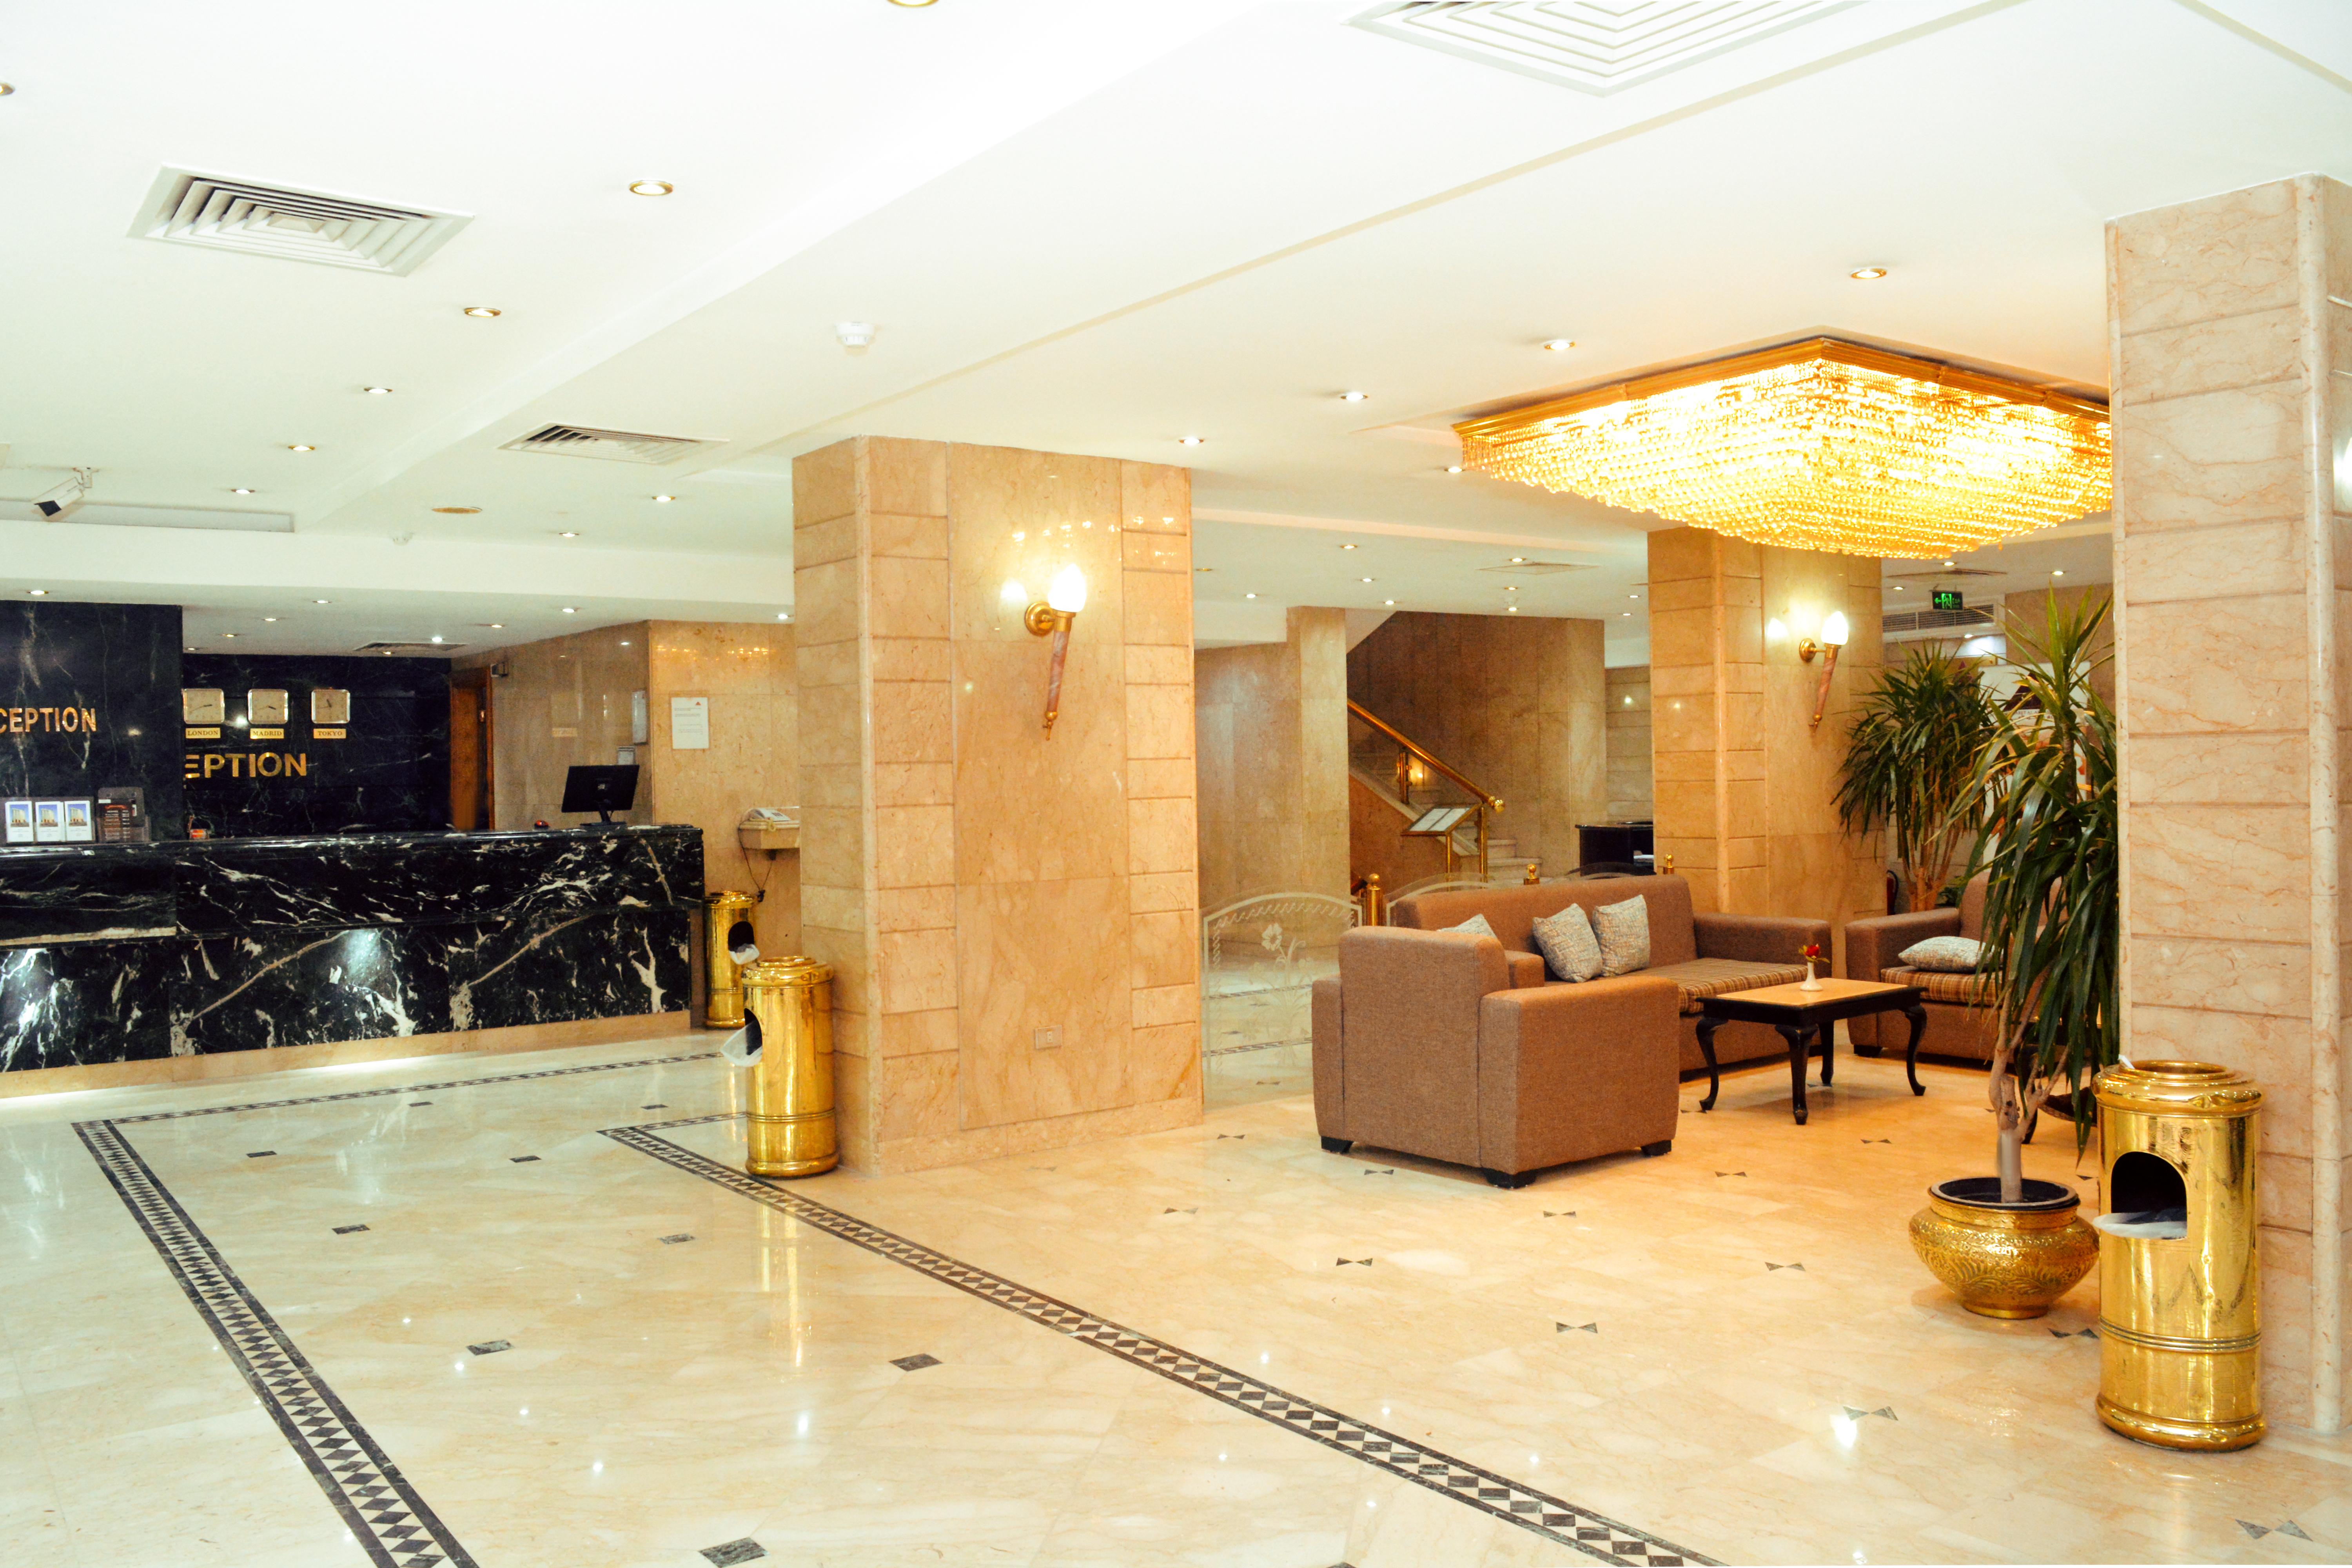 Gawharet Al Ahram Hotel Kair Zewnętrze zdjęcie